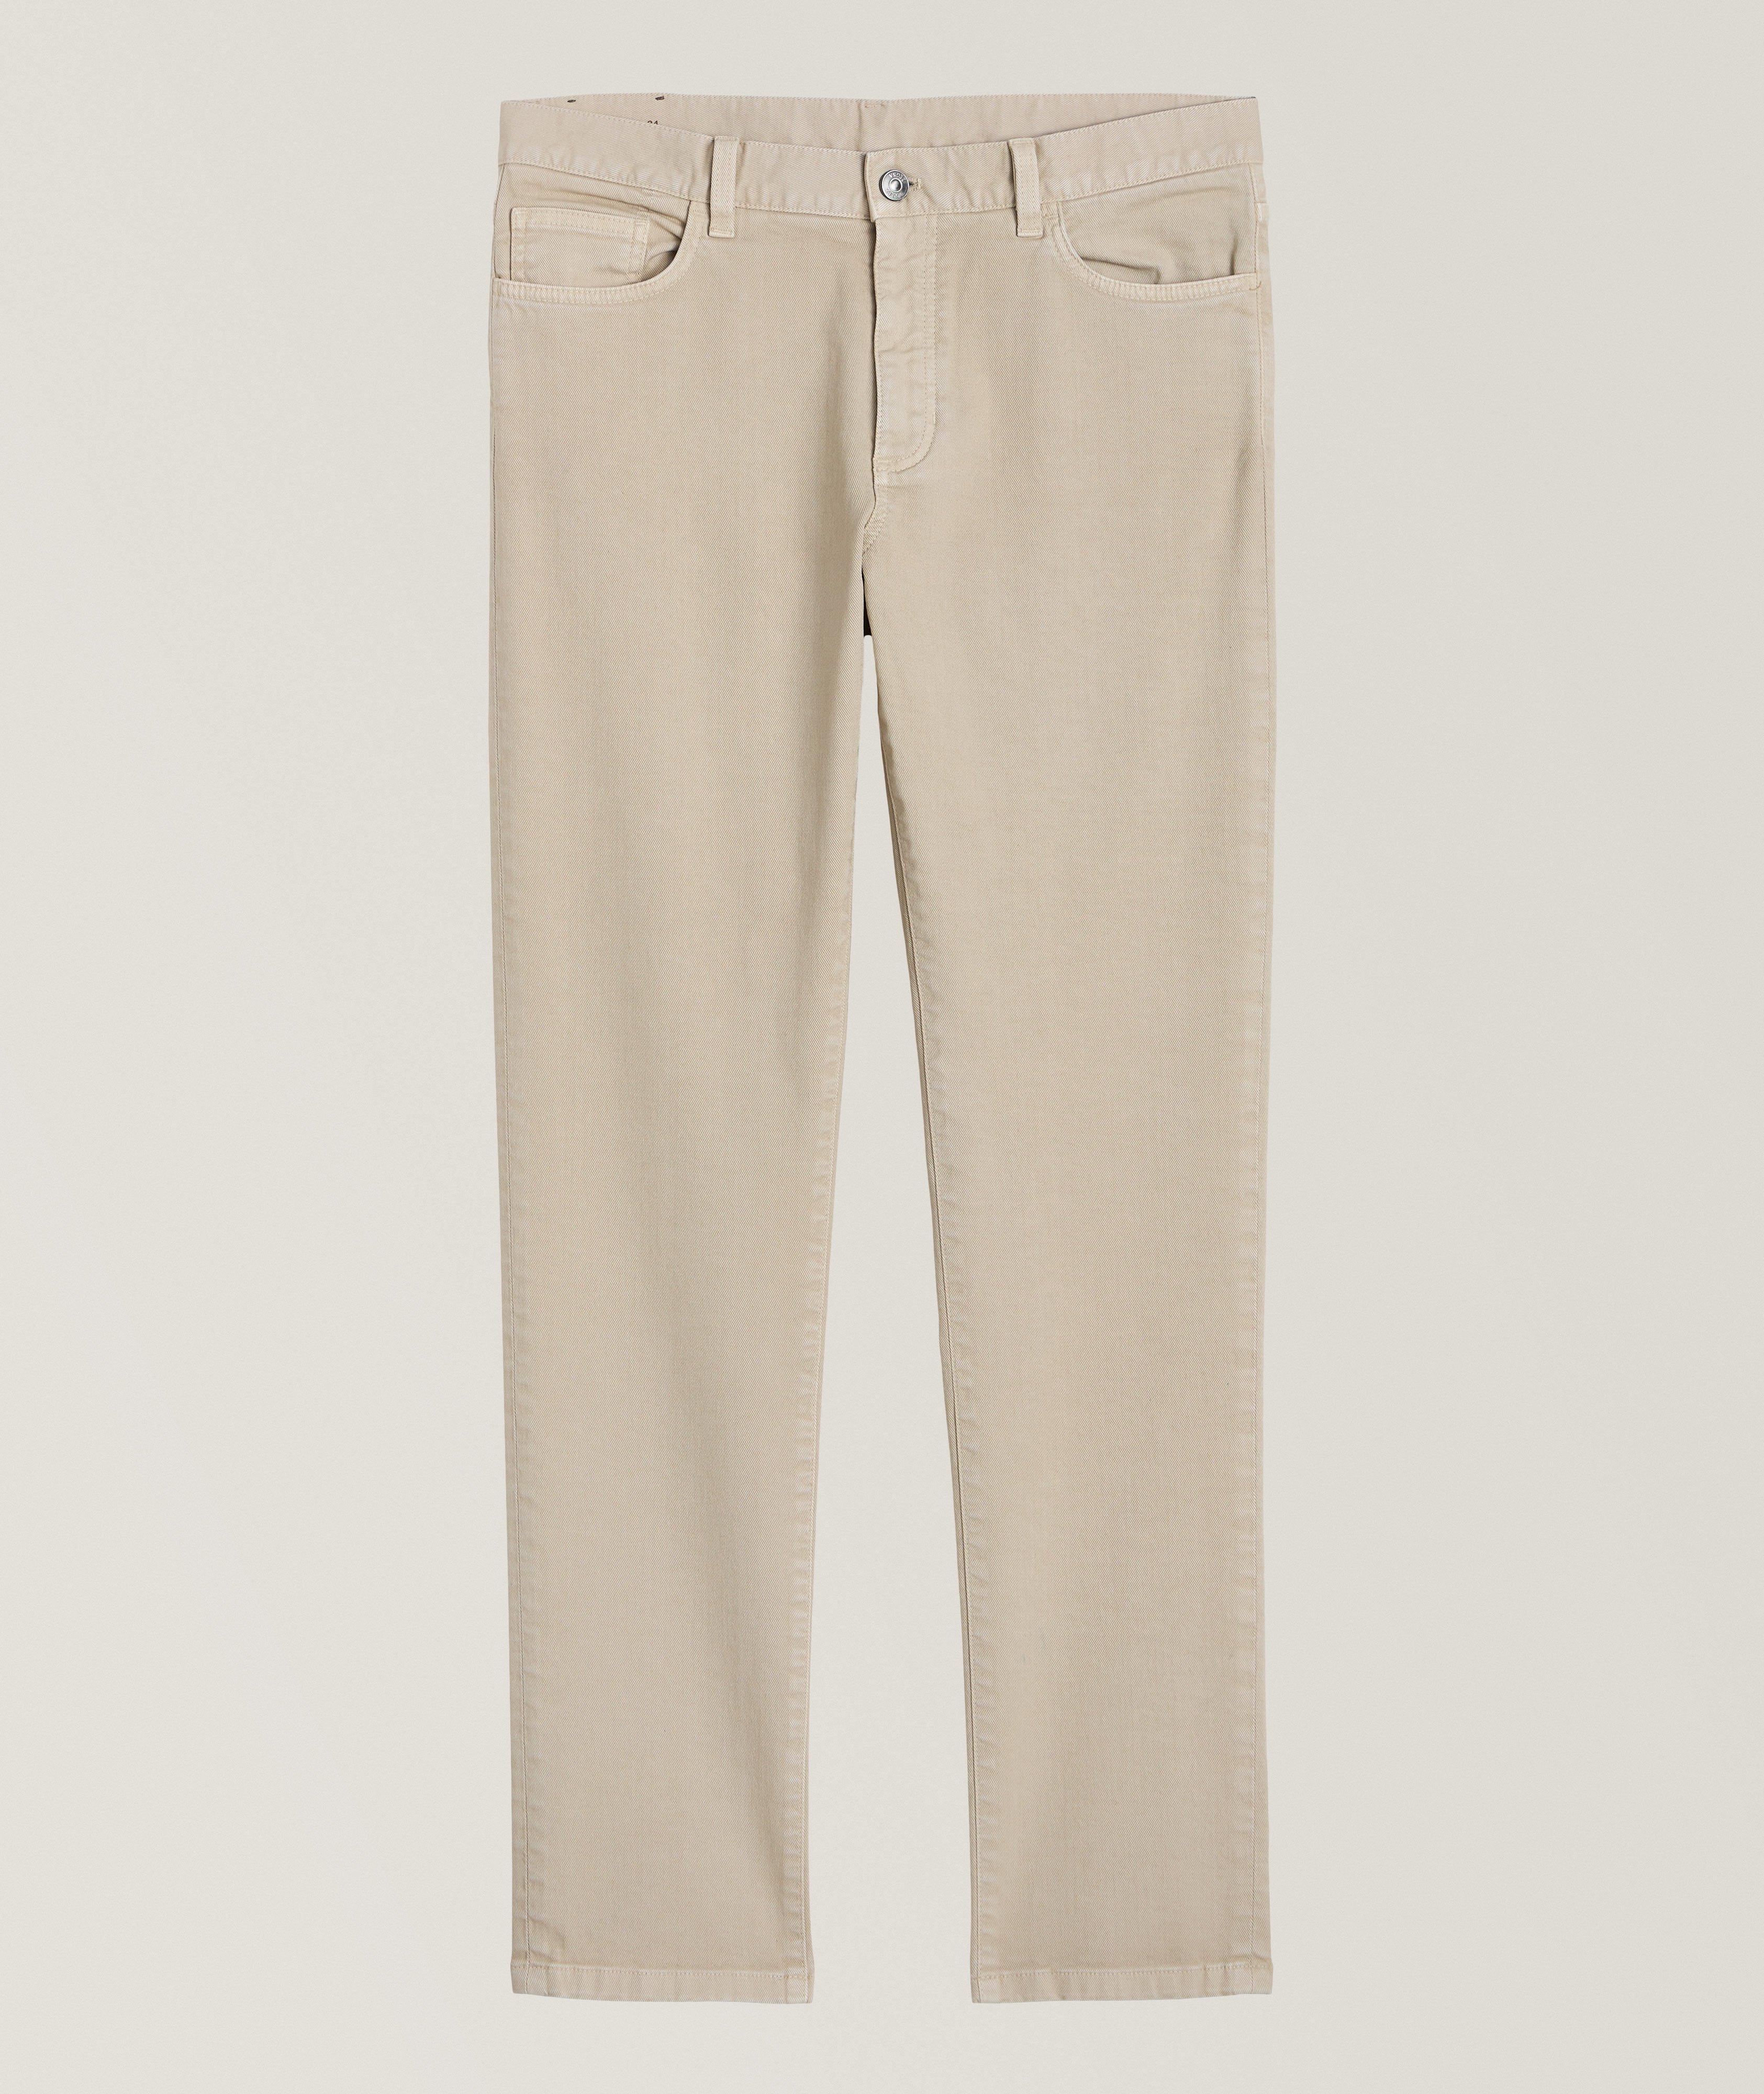 Pantalon en coton extensible de coupe amincie image 0